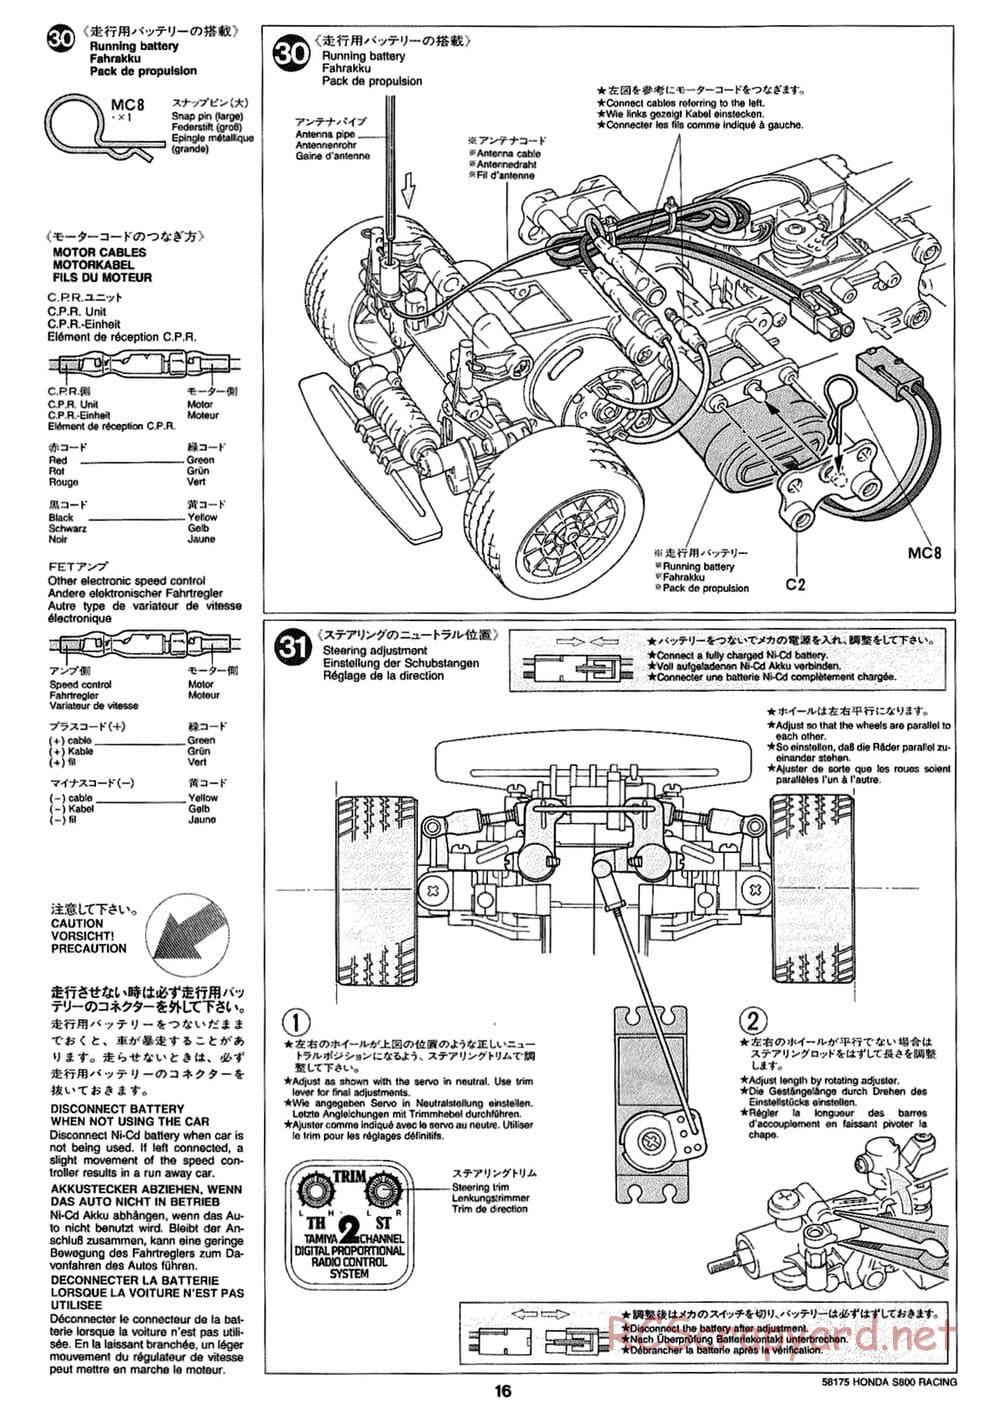 Tamiya - Honda S800 Racing - M02 Chassis - Manual - Page 16